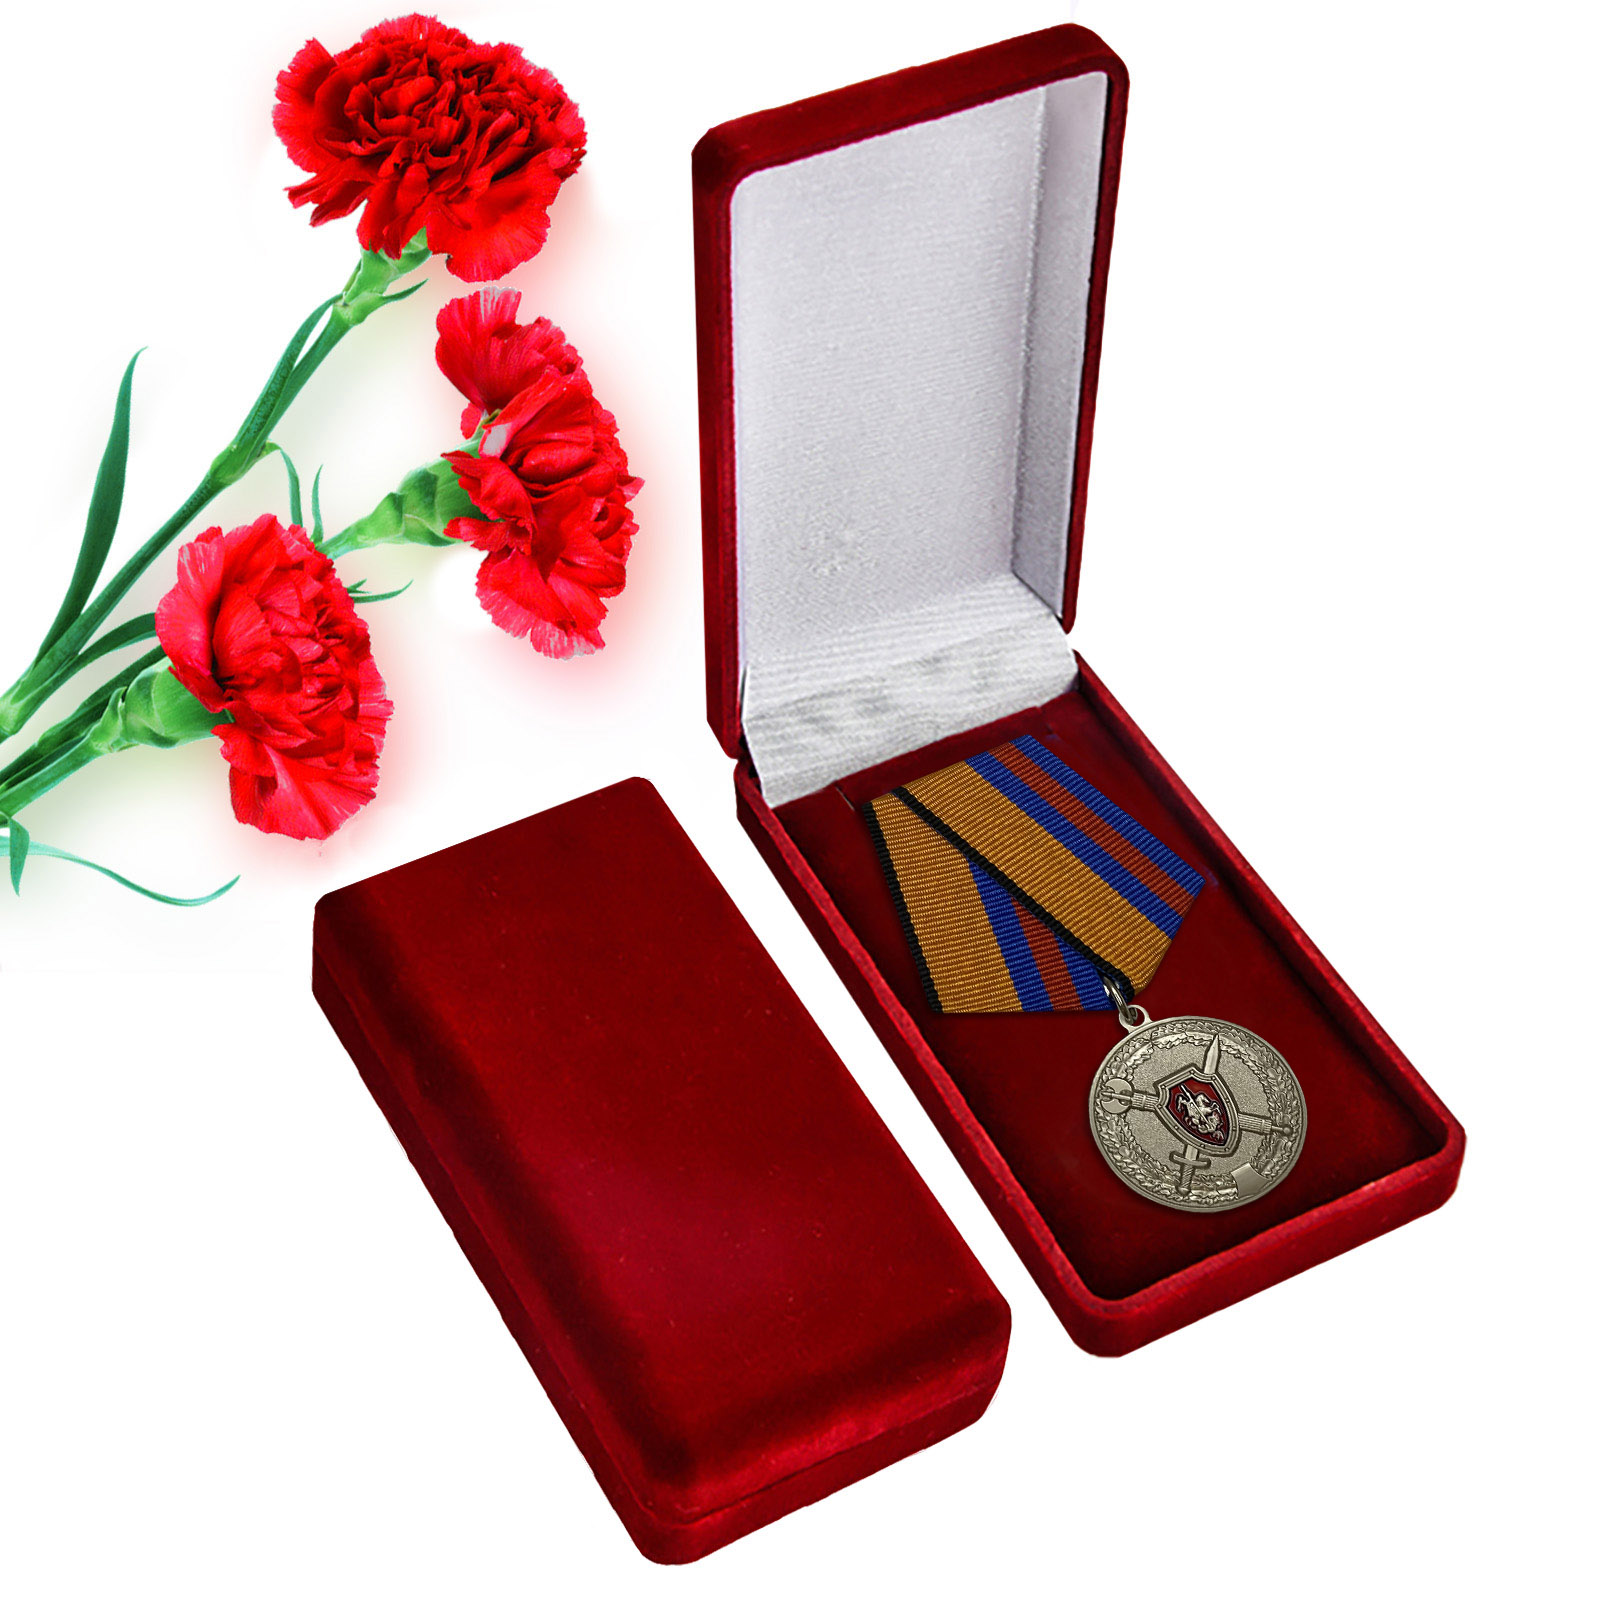 Медаль "За обеспечение законности и правопорядка" МО РФ